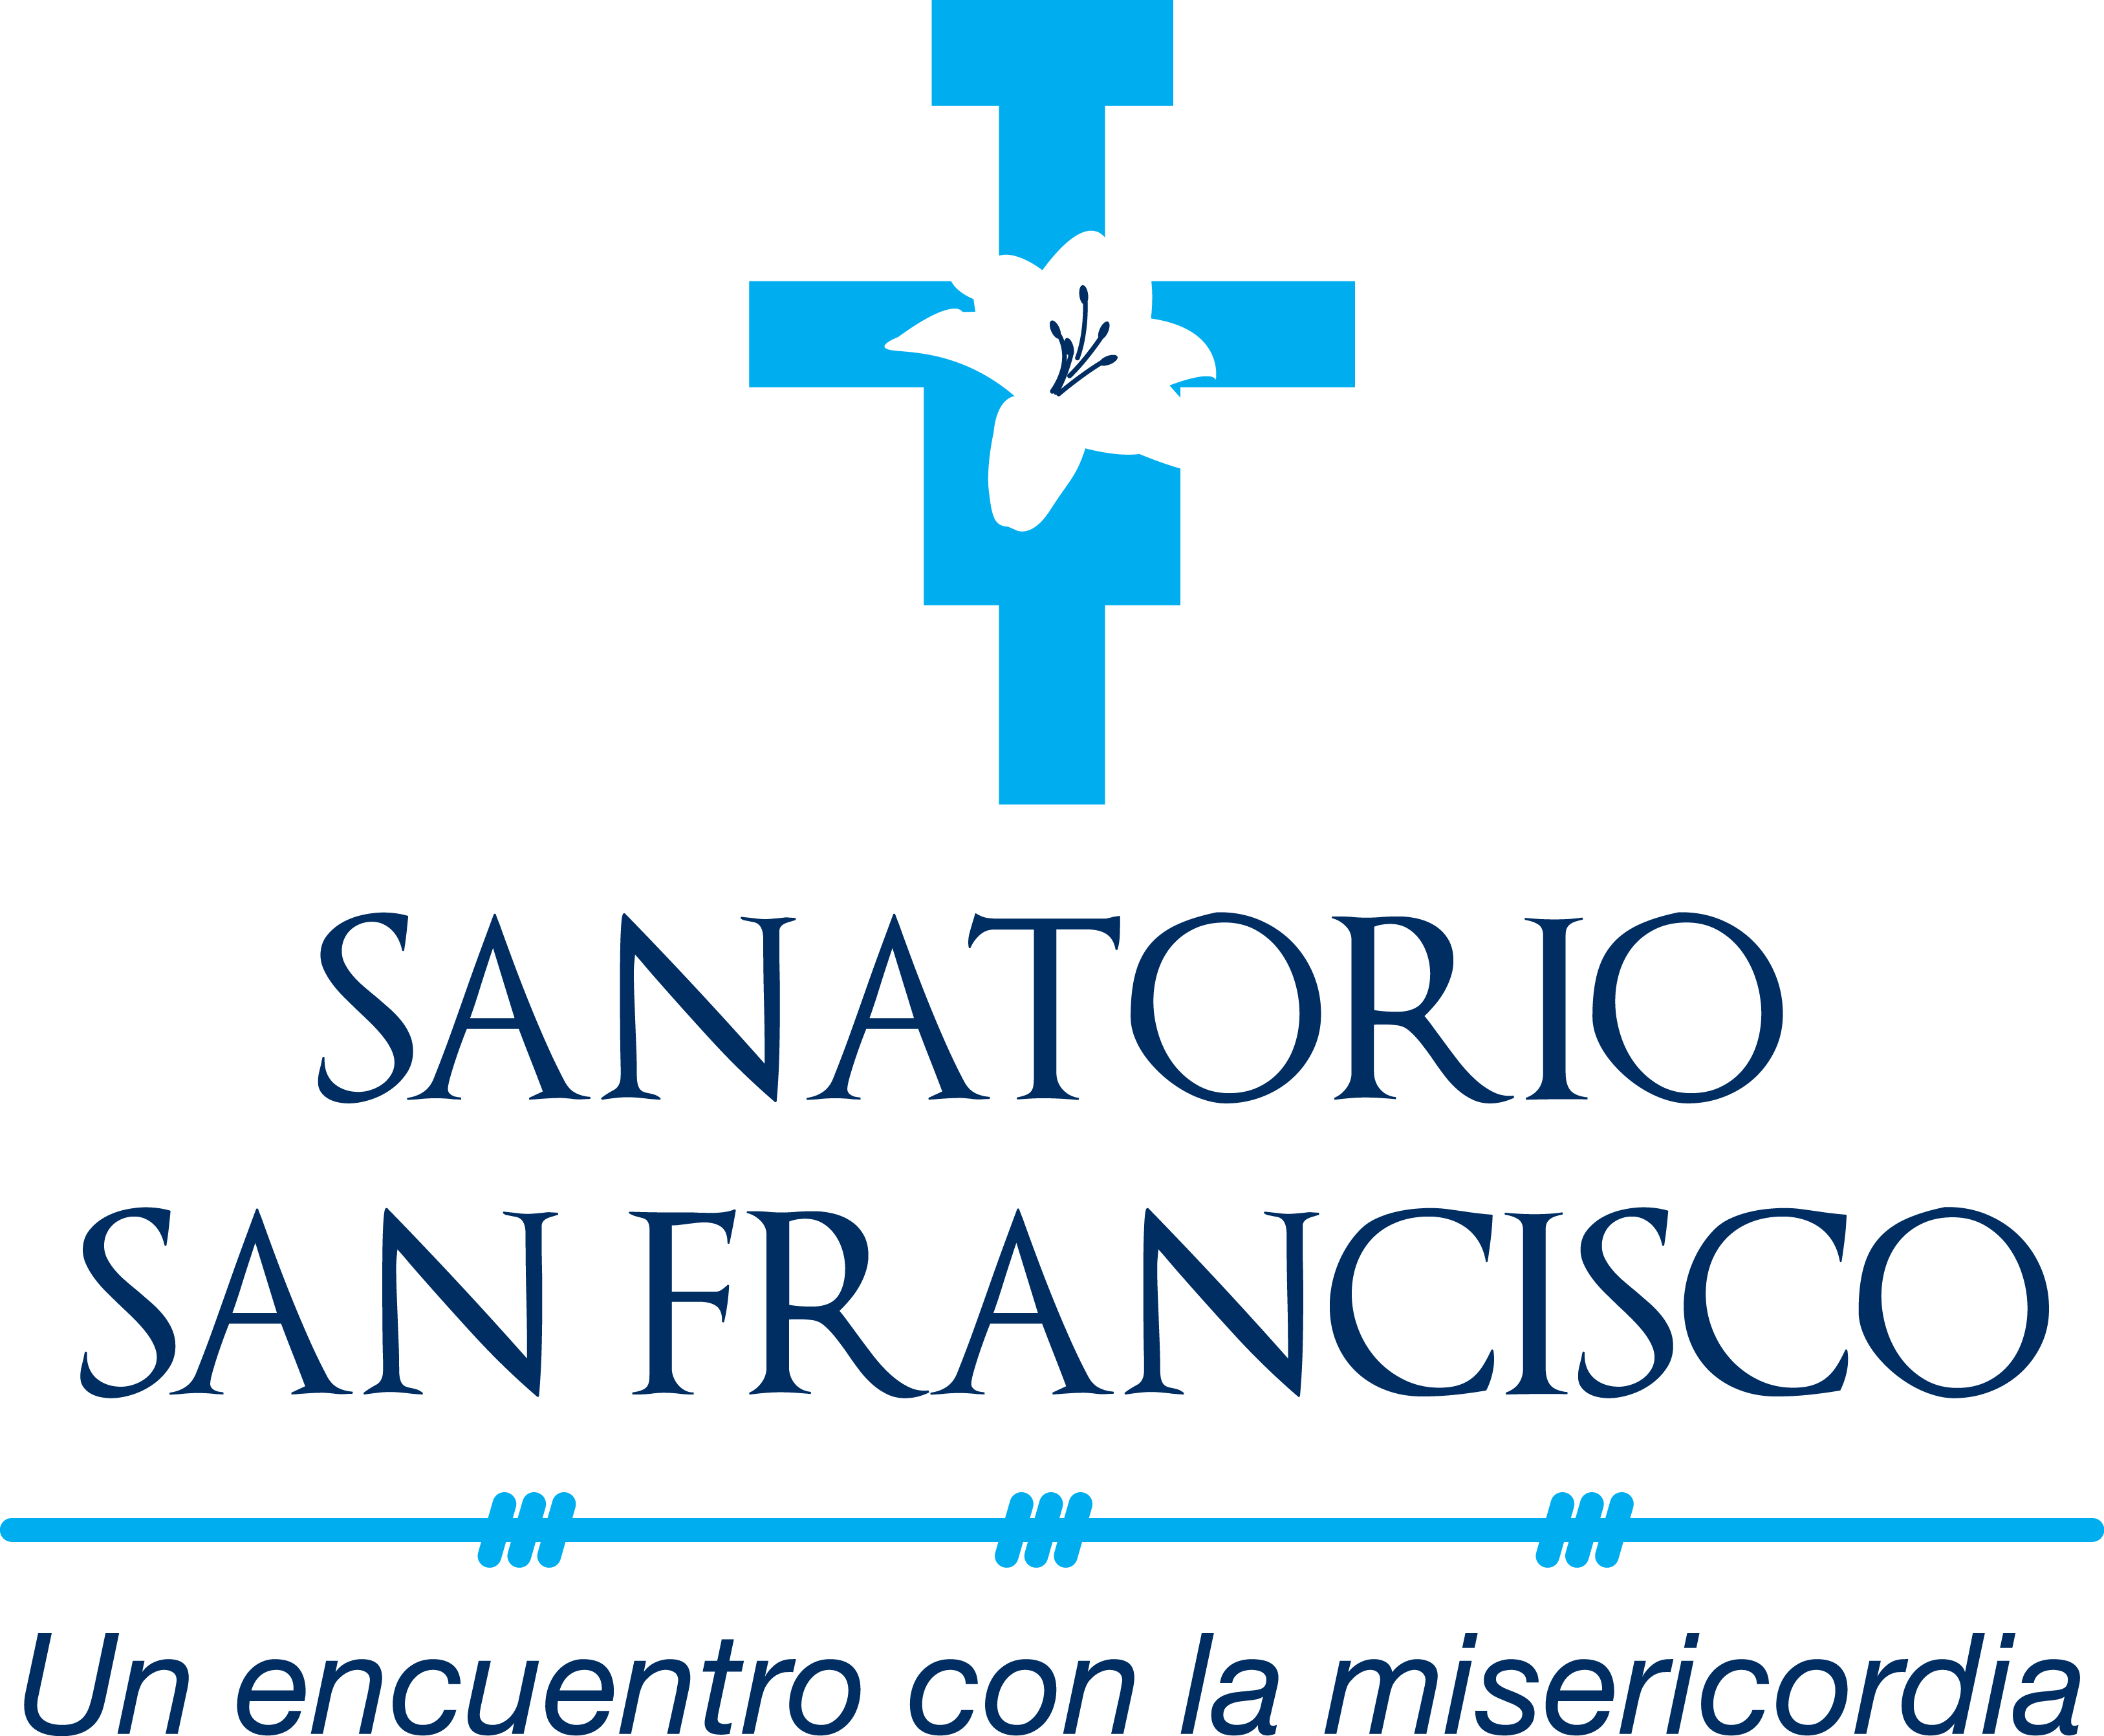 Sanatorio San Francisco